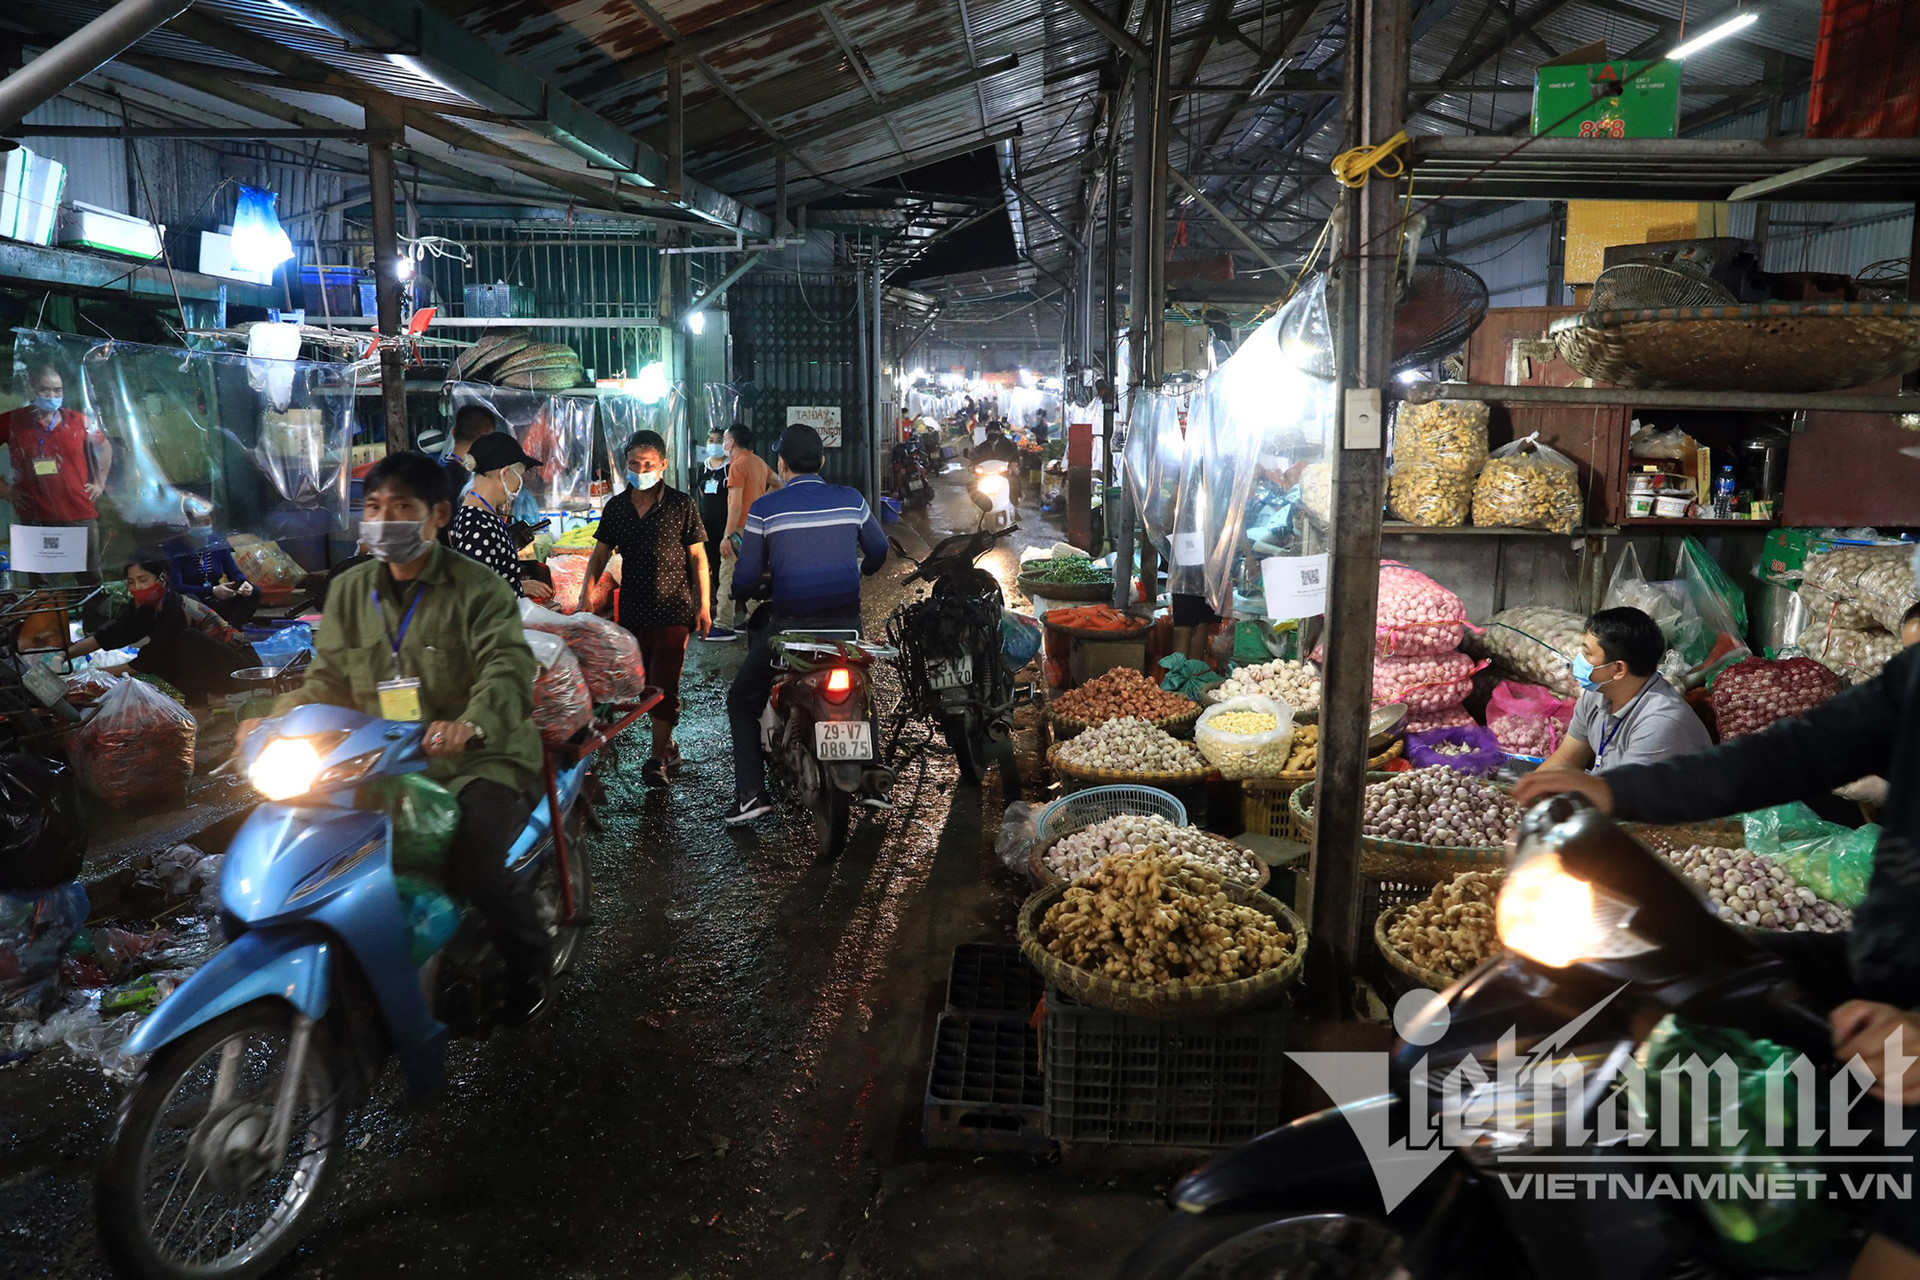 Chợ đầu mối nổi tiếng nhất Hà Nội mở lại sau hai tháng đóng cửa - Ảnh 10.